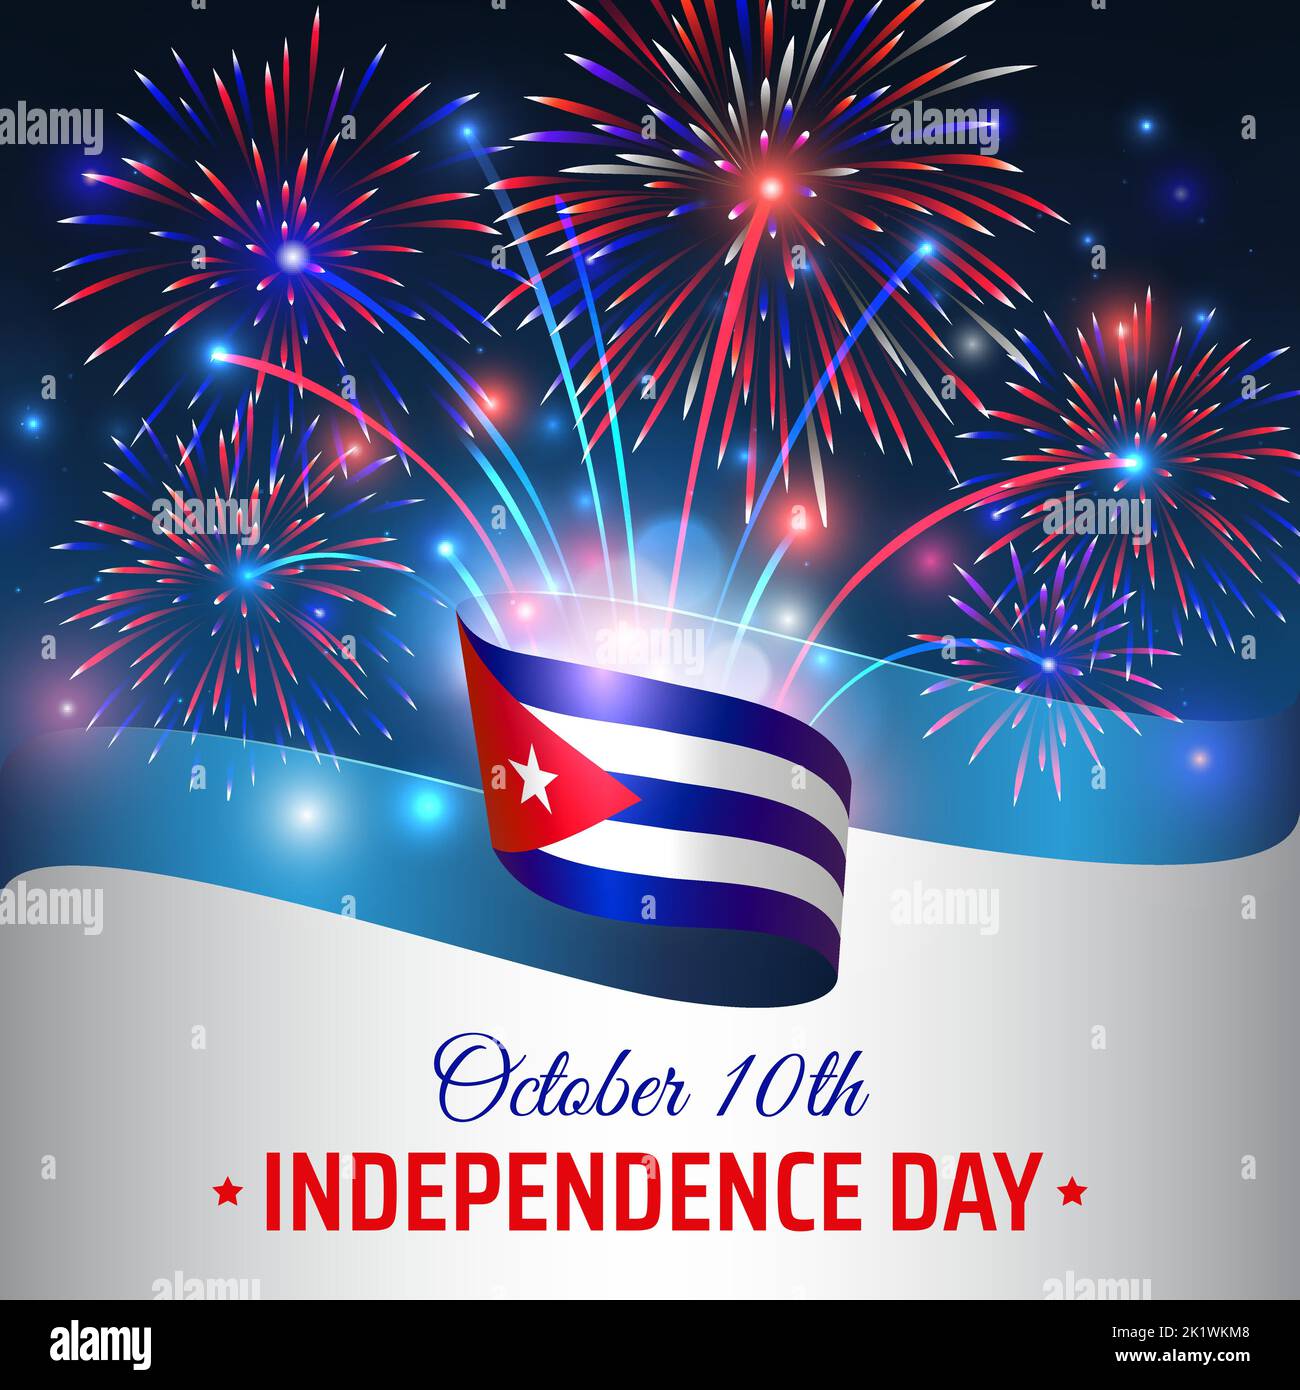 10 de octubre, día de la independencia cuba. Bandera cubana ondulada y coloridos fuegos artificiales sobre fondo azul cielo. Fiesta nacional de cuba 10th de octubre. Día de la independencia Ilustración del Vector